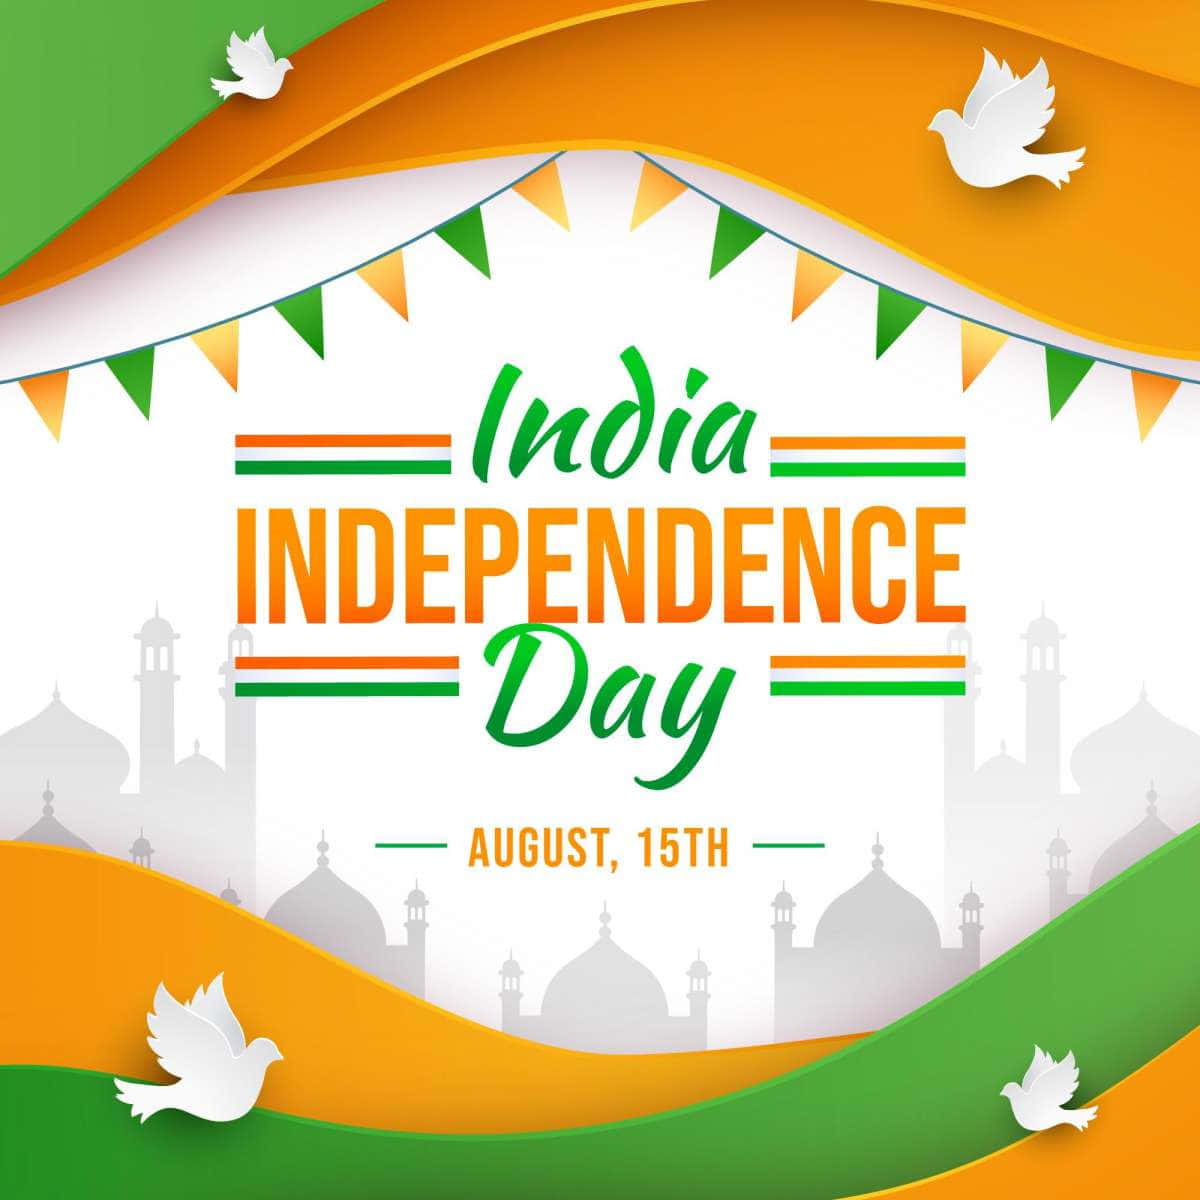 Fotodi Colombe Verdi E Gialle Per Il Giorno Dell'indipendenza Dell'india